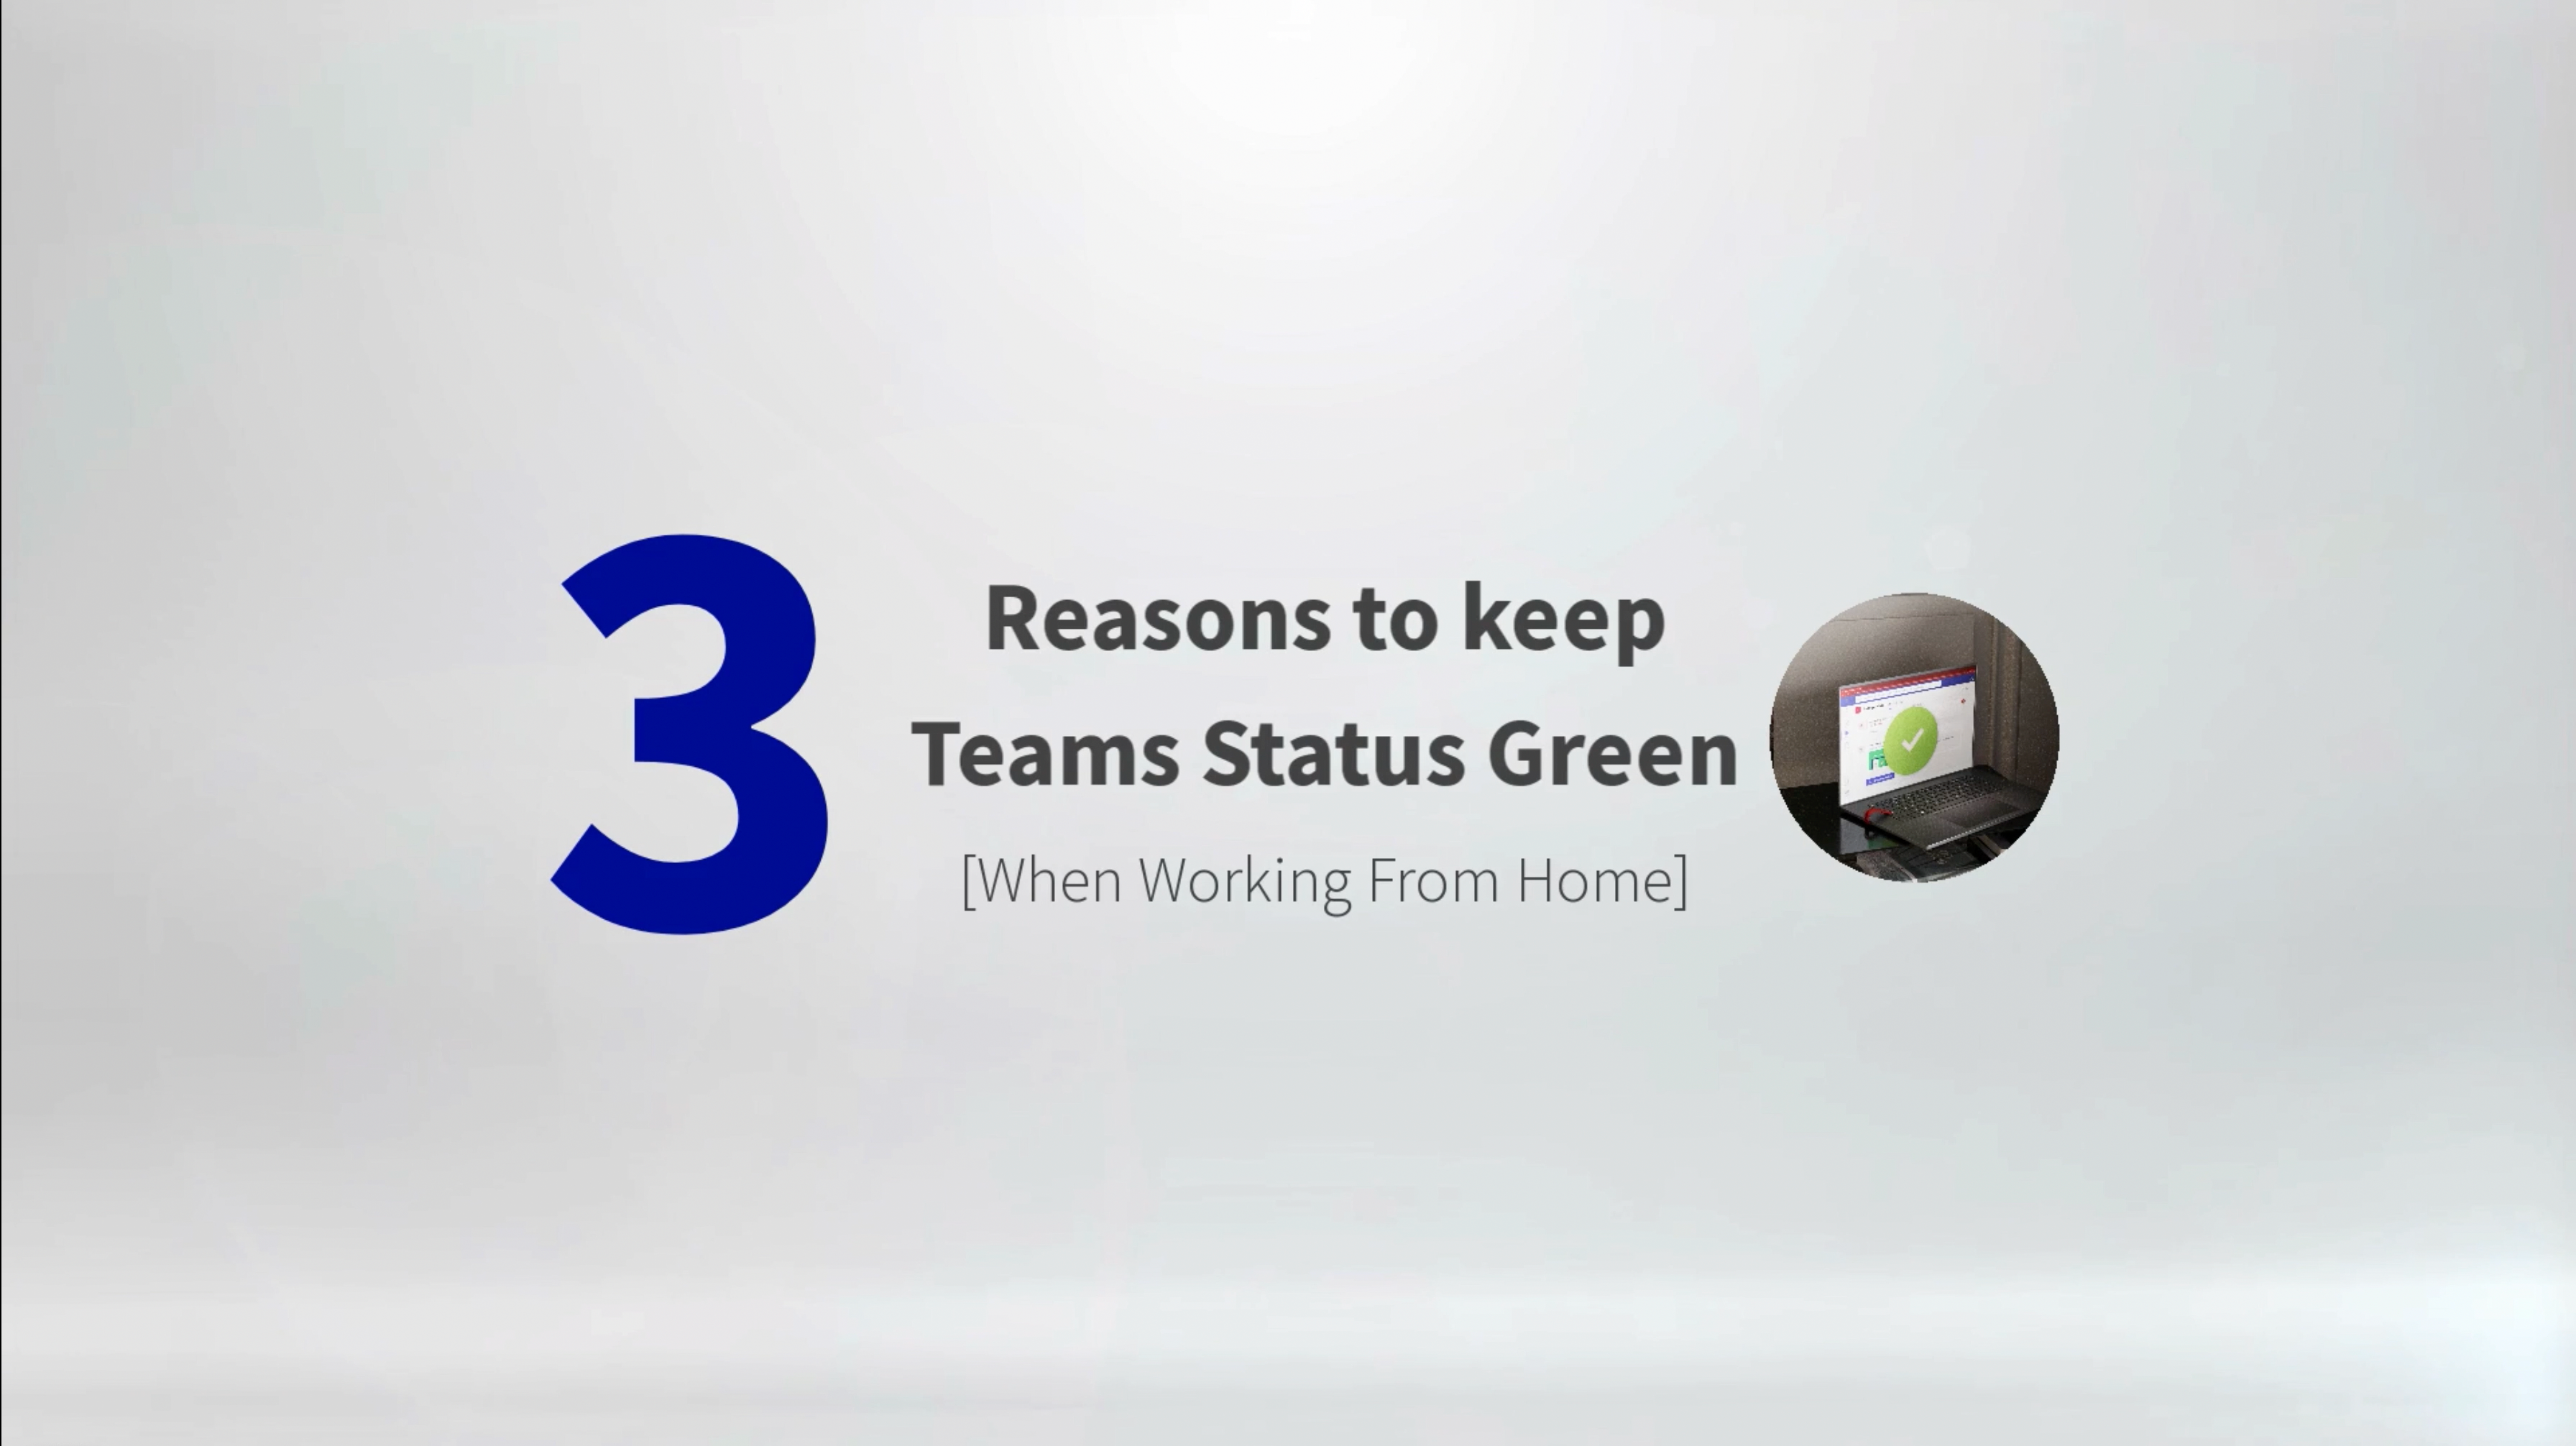 Cargar video: Tres razones para mantener el estatus de los equipos en verde. 1. Privacidad 2. Productividad 3. Libertad.